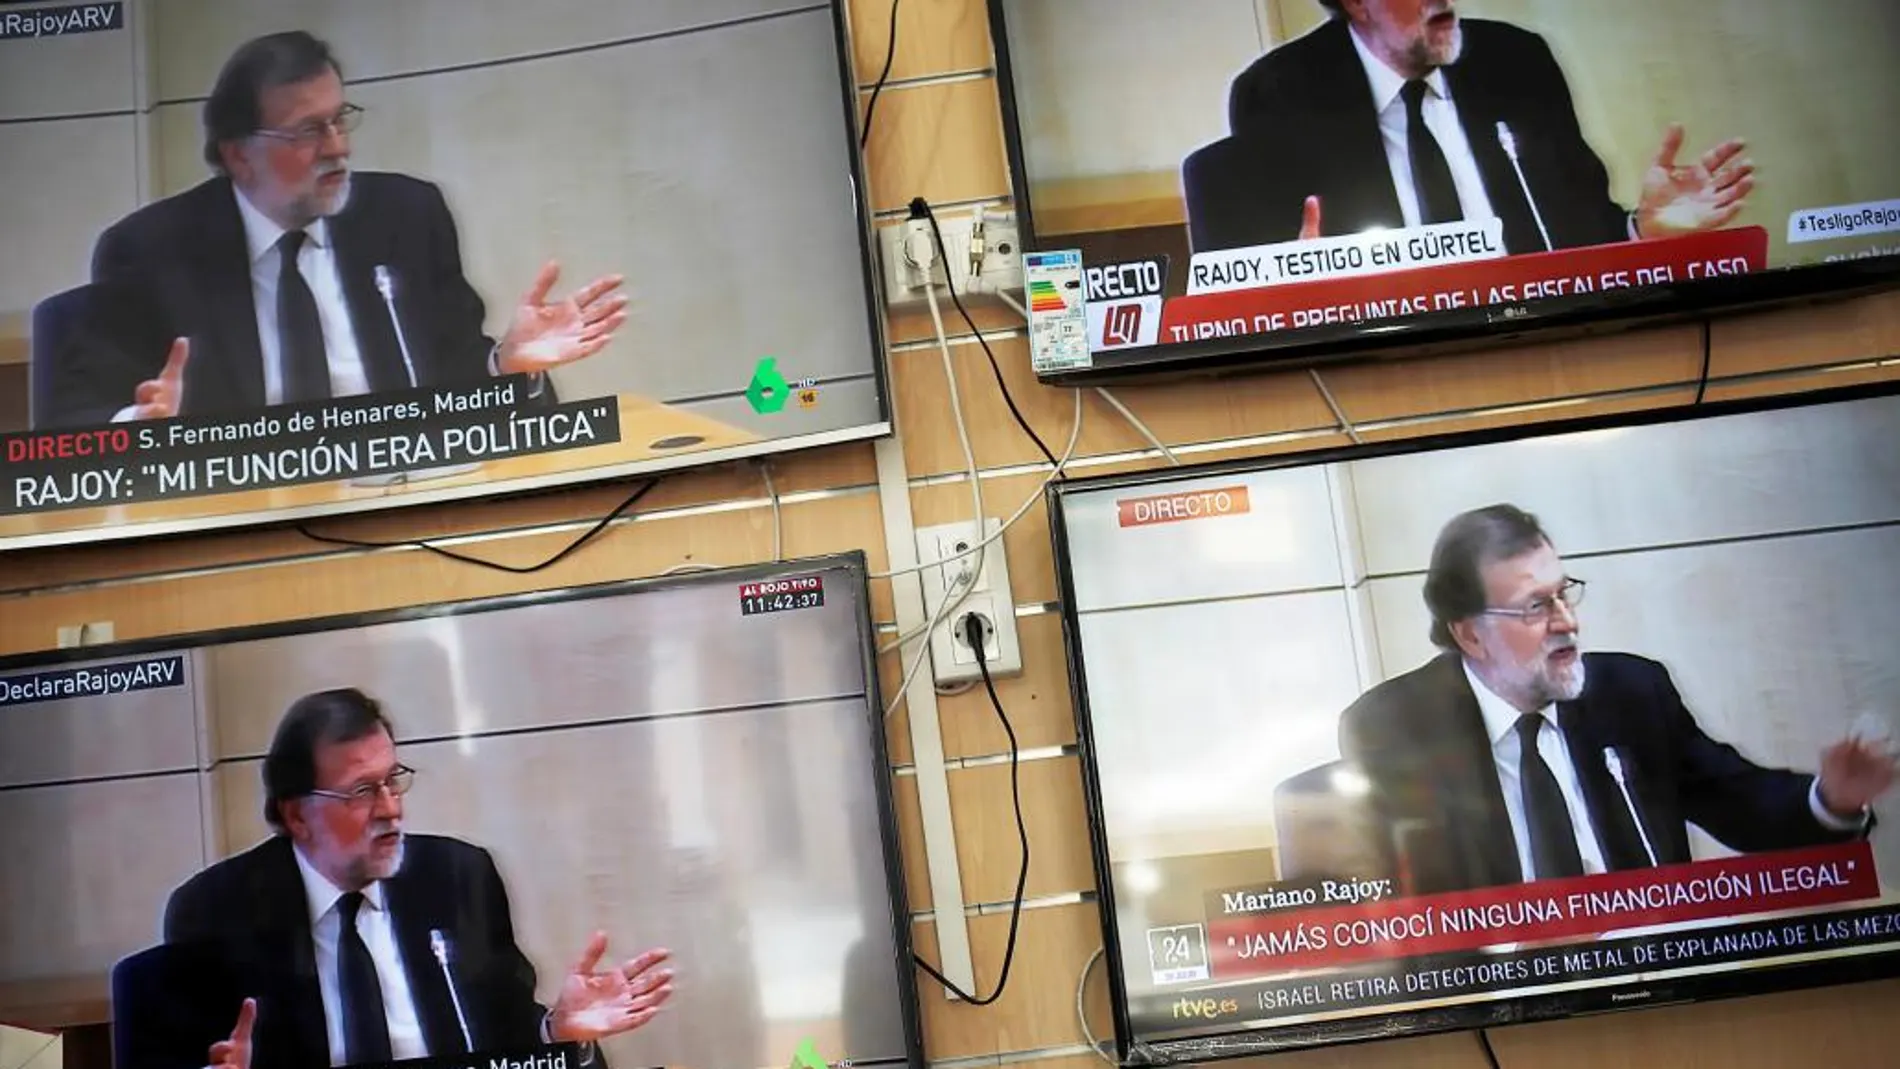 La imagen del presidente del Gobierno, Mariano Rajoy, en las televisiones nacionales